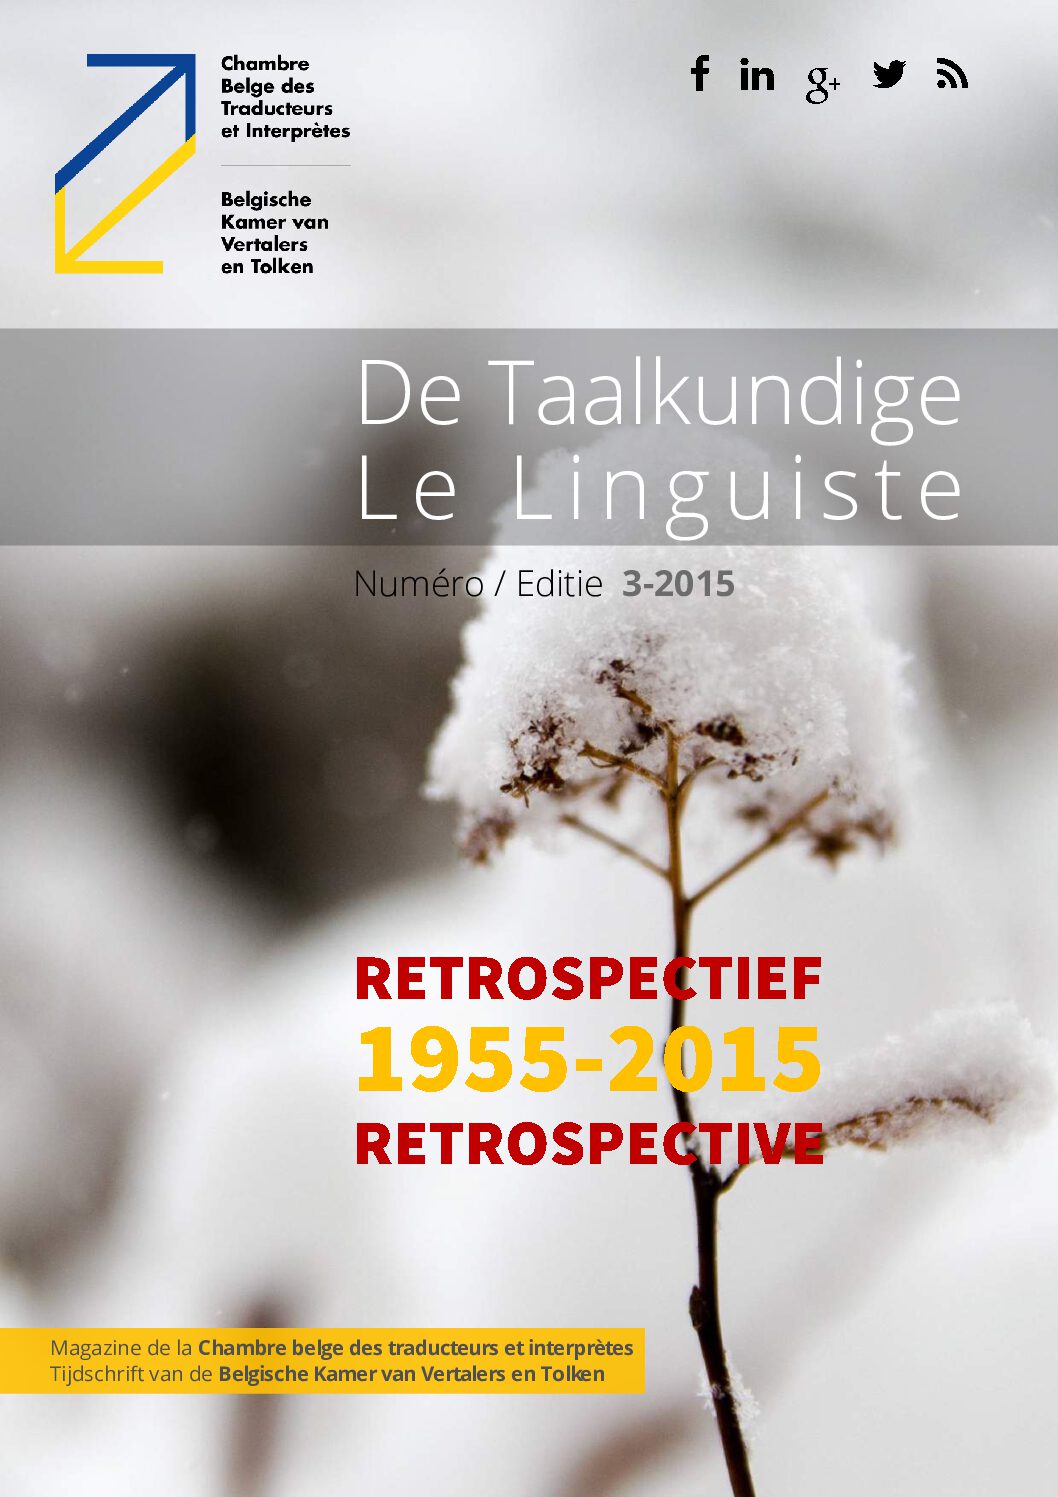 Image de présentation pour le document : De Taalkundige – Le Linguiste 2015 / 3